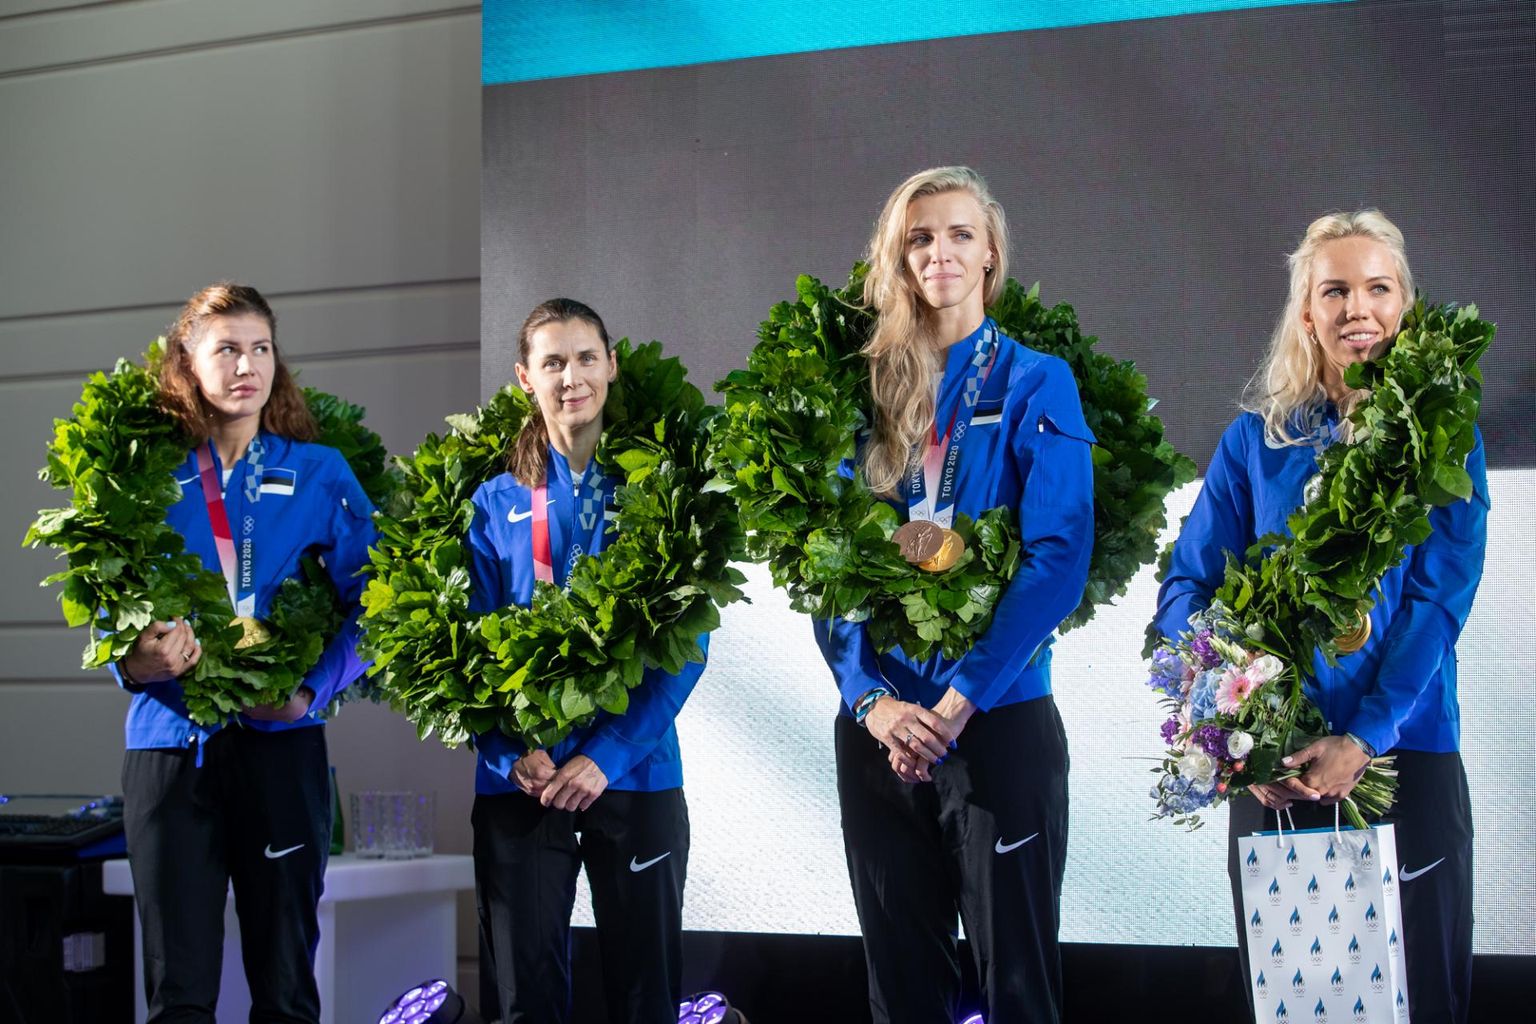 Юлия Беляева, Ирина Эмбрих, Катрина Лехис и Эрика Кирпу не просто продемонстрировали чудеса командного духа, воли к победе и спортивного мастерства. Они напомнили о том, что спорт может быть нашей общей радостью.